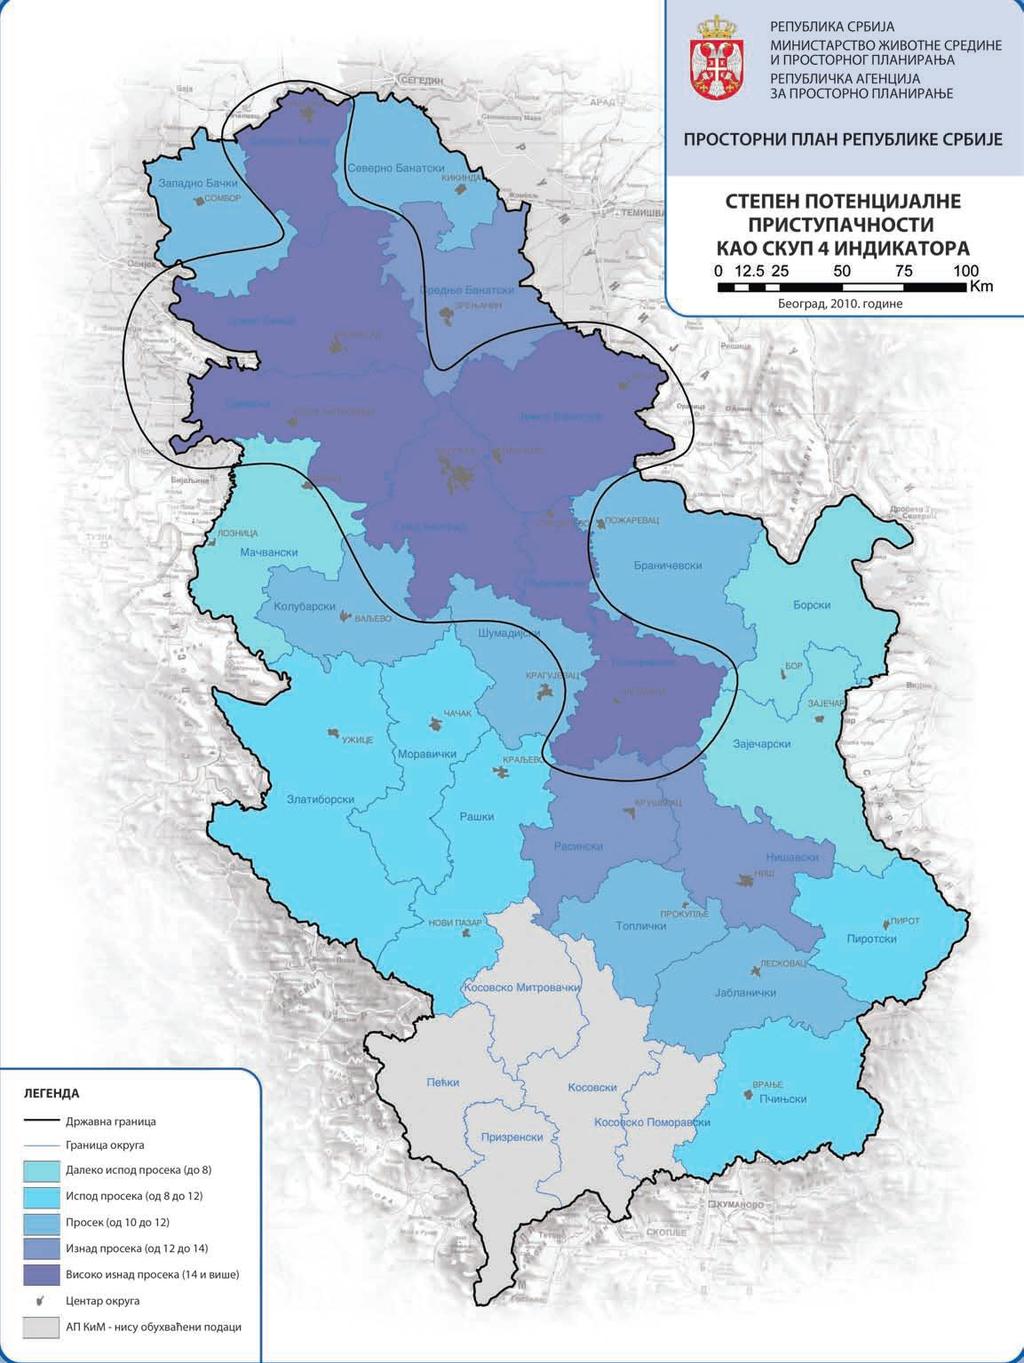 Извор: Просторни план Републике Србије од 2010. до 2020. године 41.